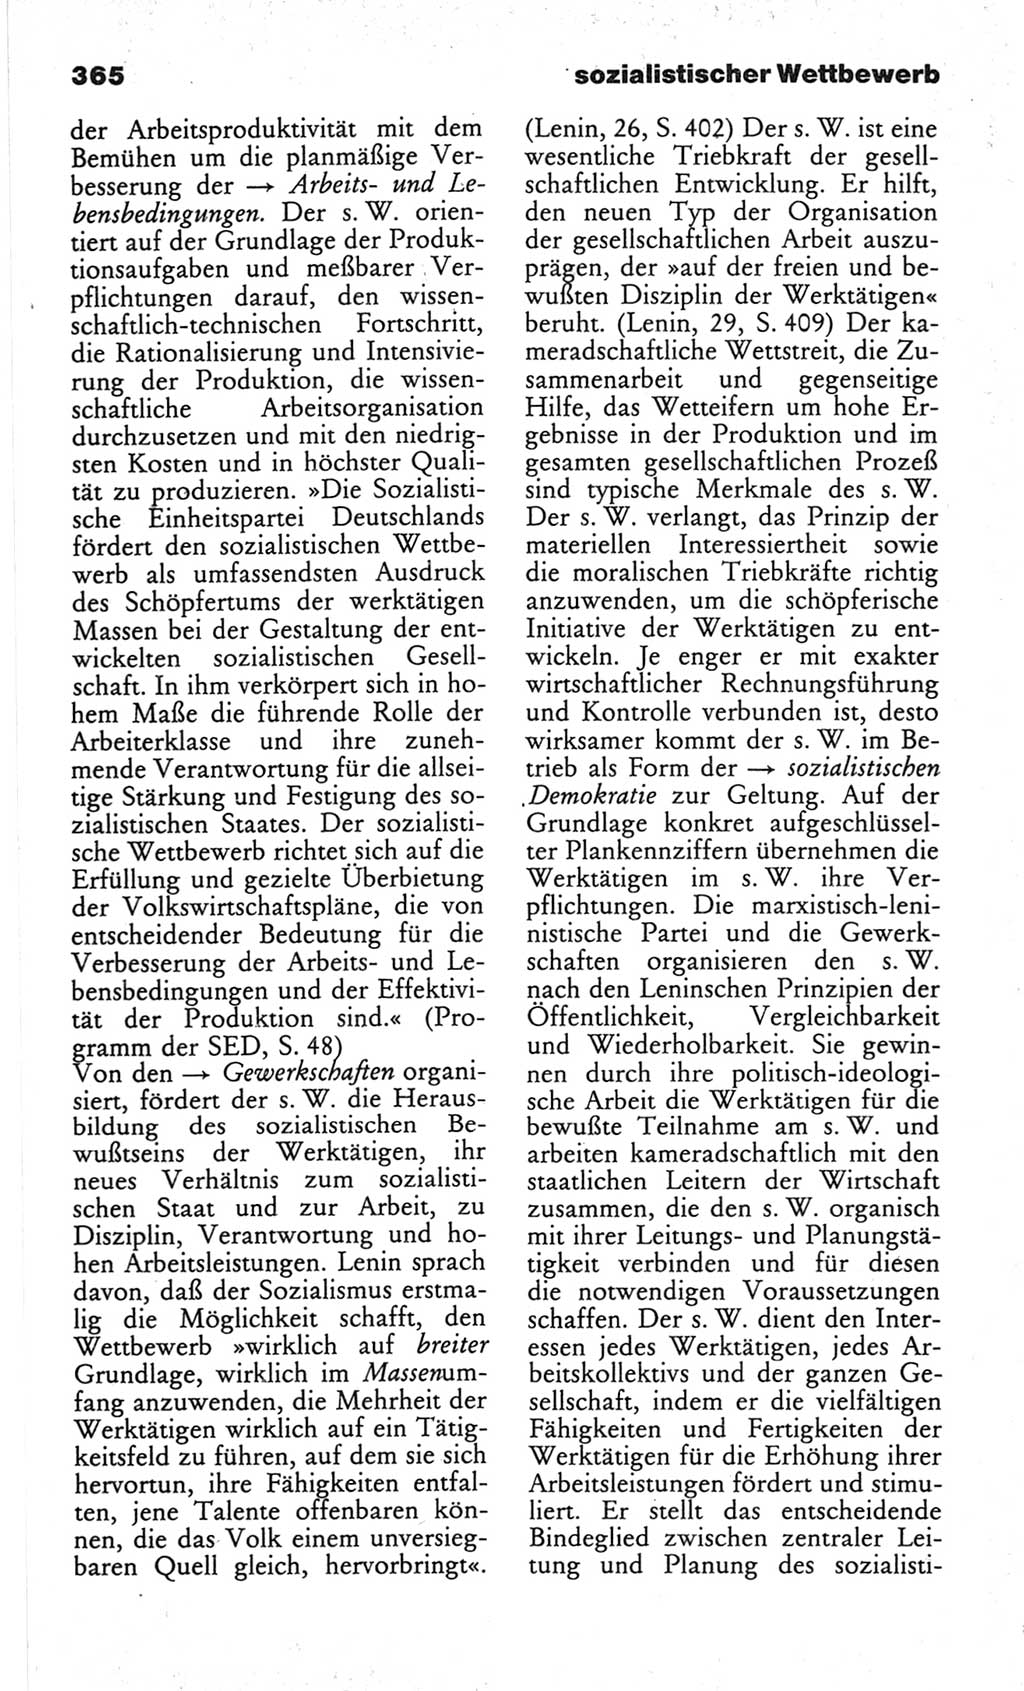 Wörterbuch des wissenschaftlichen Kommunismus [Deutsche Demokratische Republik (DDR)] 1982, Seite 365 (Wb. wiss. Komm. DDR 1982, S. 365)